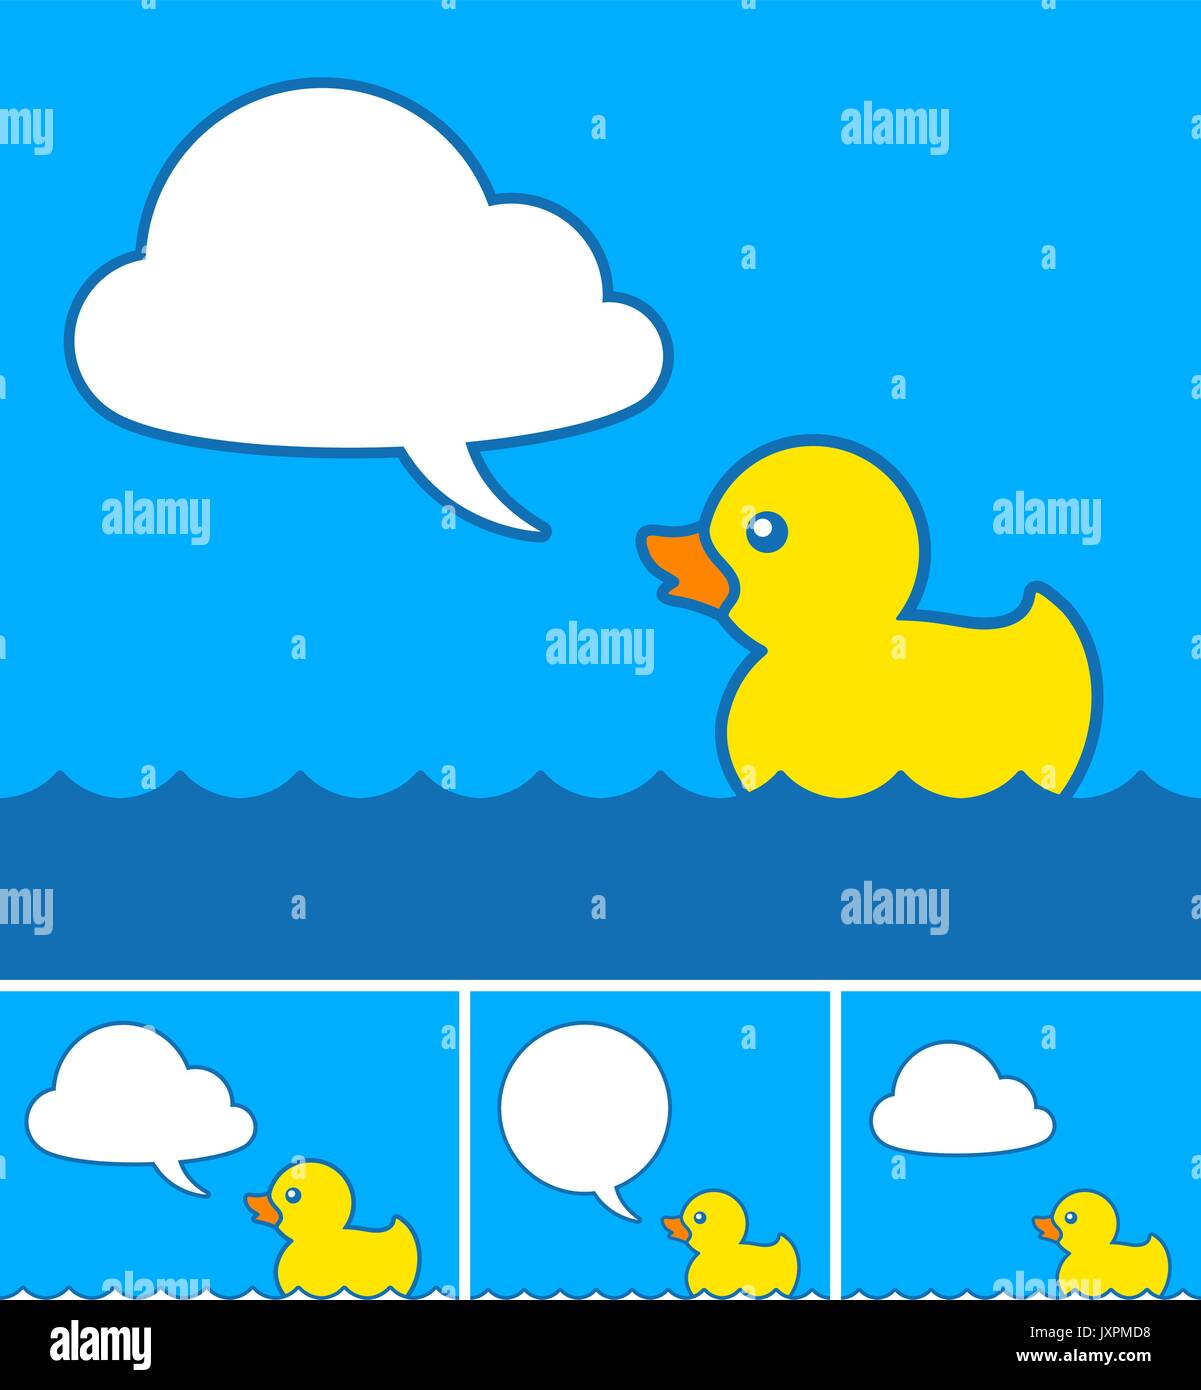 Carino piccolo giallo cartoon rubber duck con il cloud discorso bolla galleggiante sull'acqua blu con quattro diverse varianti, illustrazione vettoriale Illustrazione Vettoriale